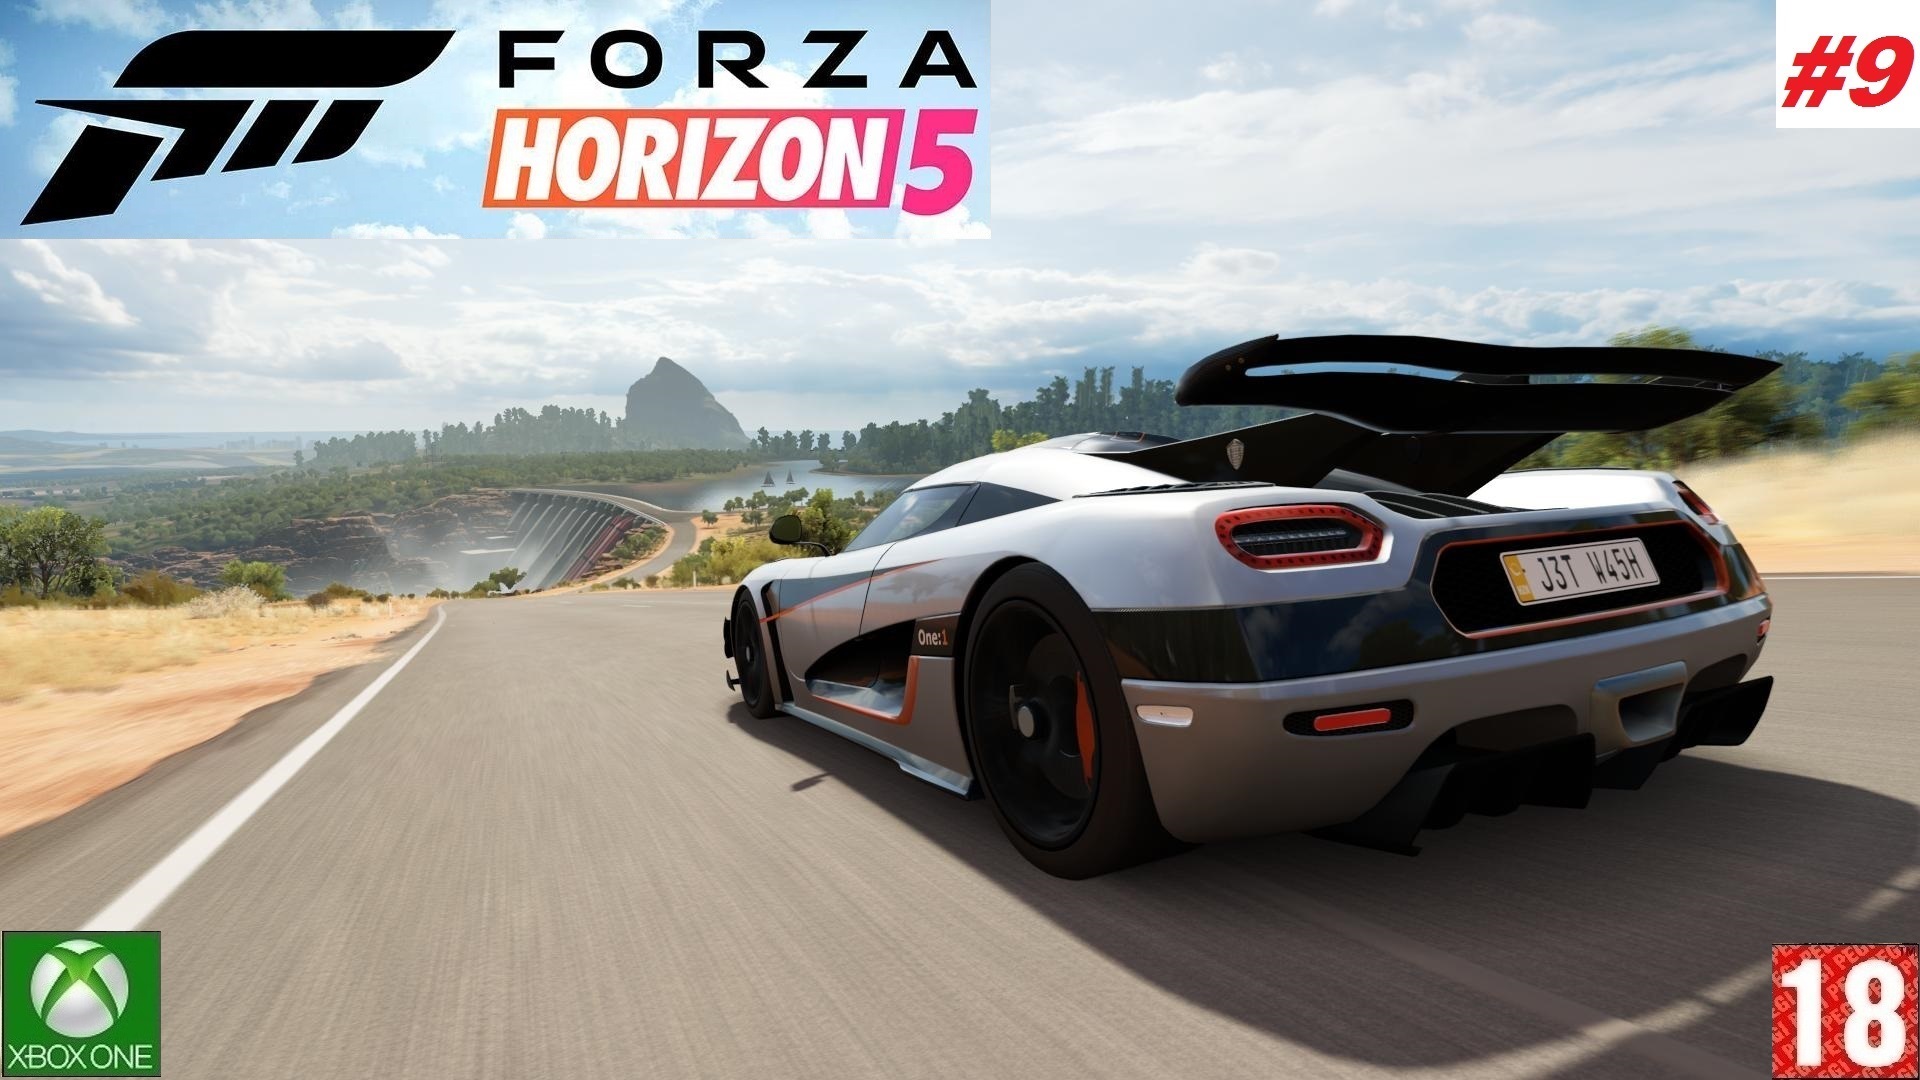 Forza Horizon 5 (Xbox One) - Прохождение - #9, Добро пожаловать в Мексику. (без комментариев)